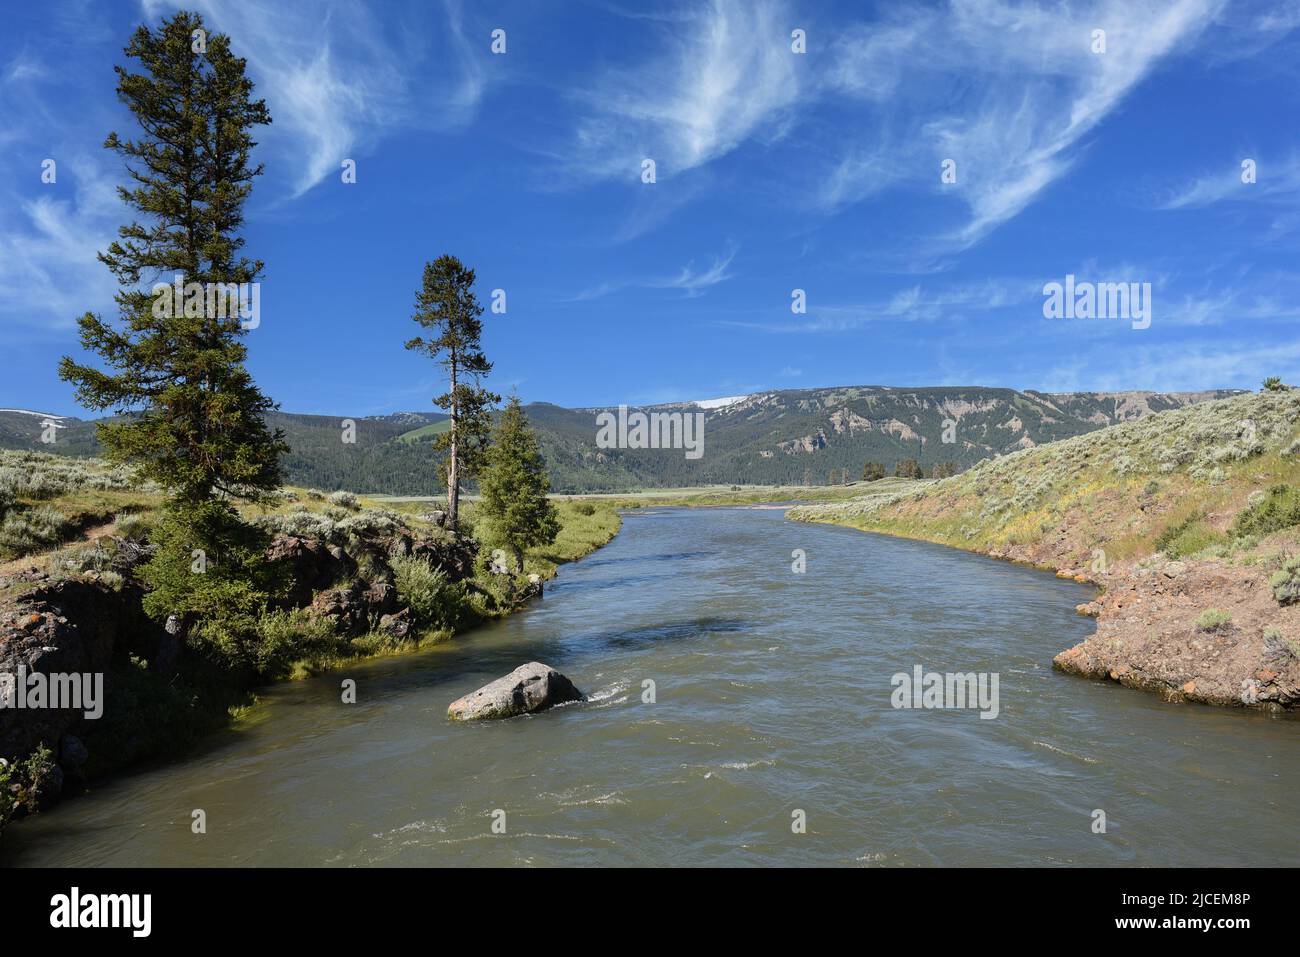 La rivière Lamar est un affluent de la rivière Yellowstone, d'environ 40 milles de long, dans le nord-ouest du Wyoming. Banque D'Images